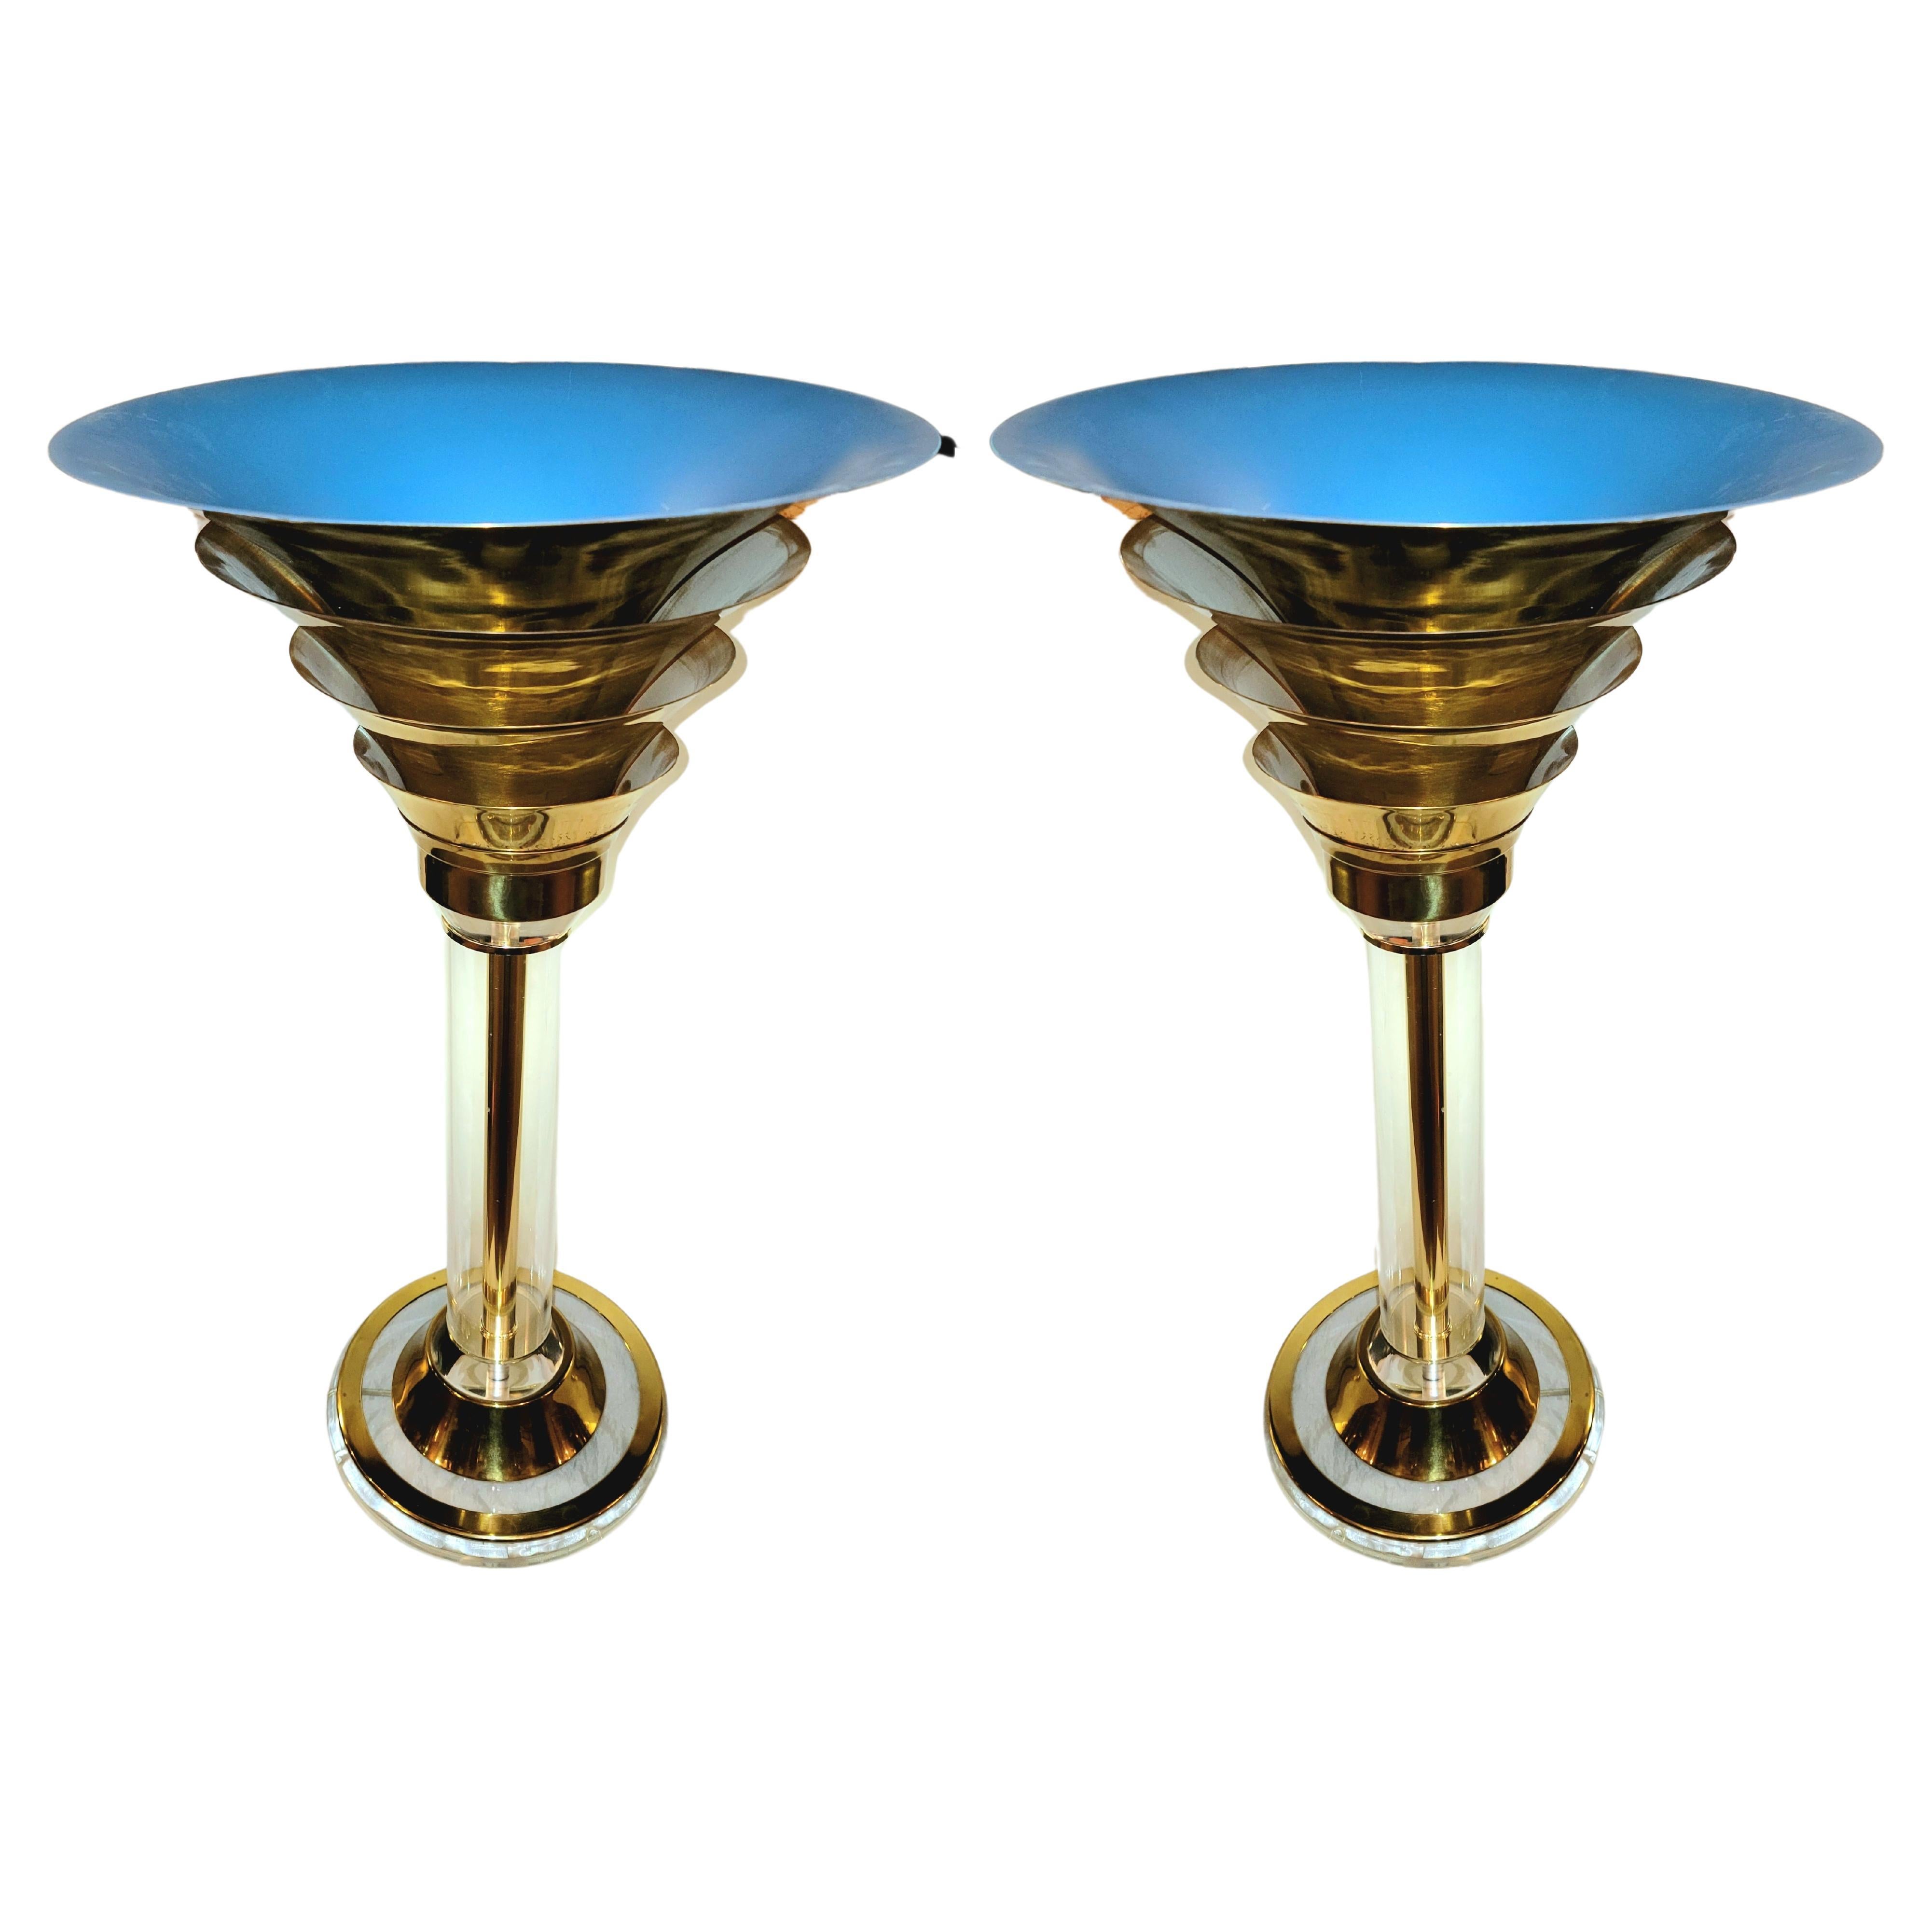 Messing und Luite Karl Springer Art Deco Tischlampen Das Innere des Stiels ist ein Messing, das von der Basis nach oben zu den Diffusor stilisierten oberen Schirmen erstreckt. Jede Schicht ermöglicht es, dass das Licht in verschiedenen Winkeln